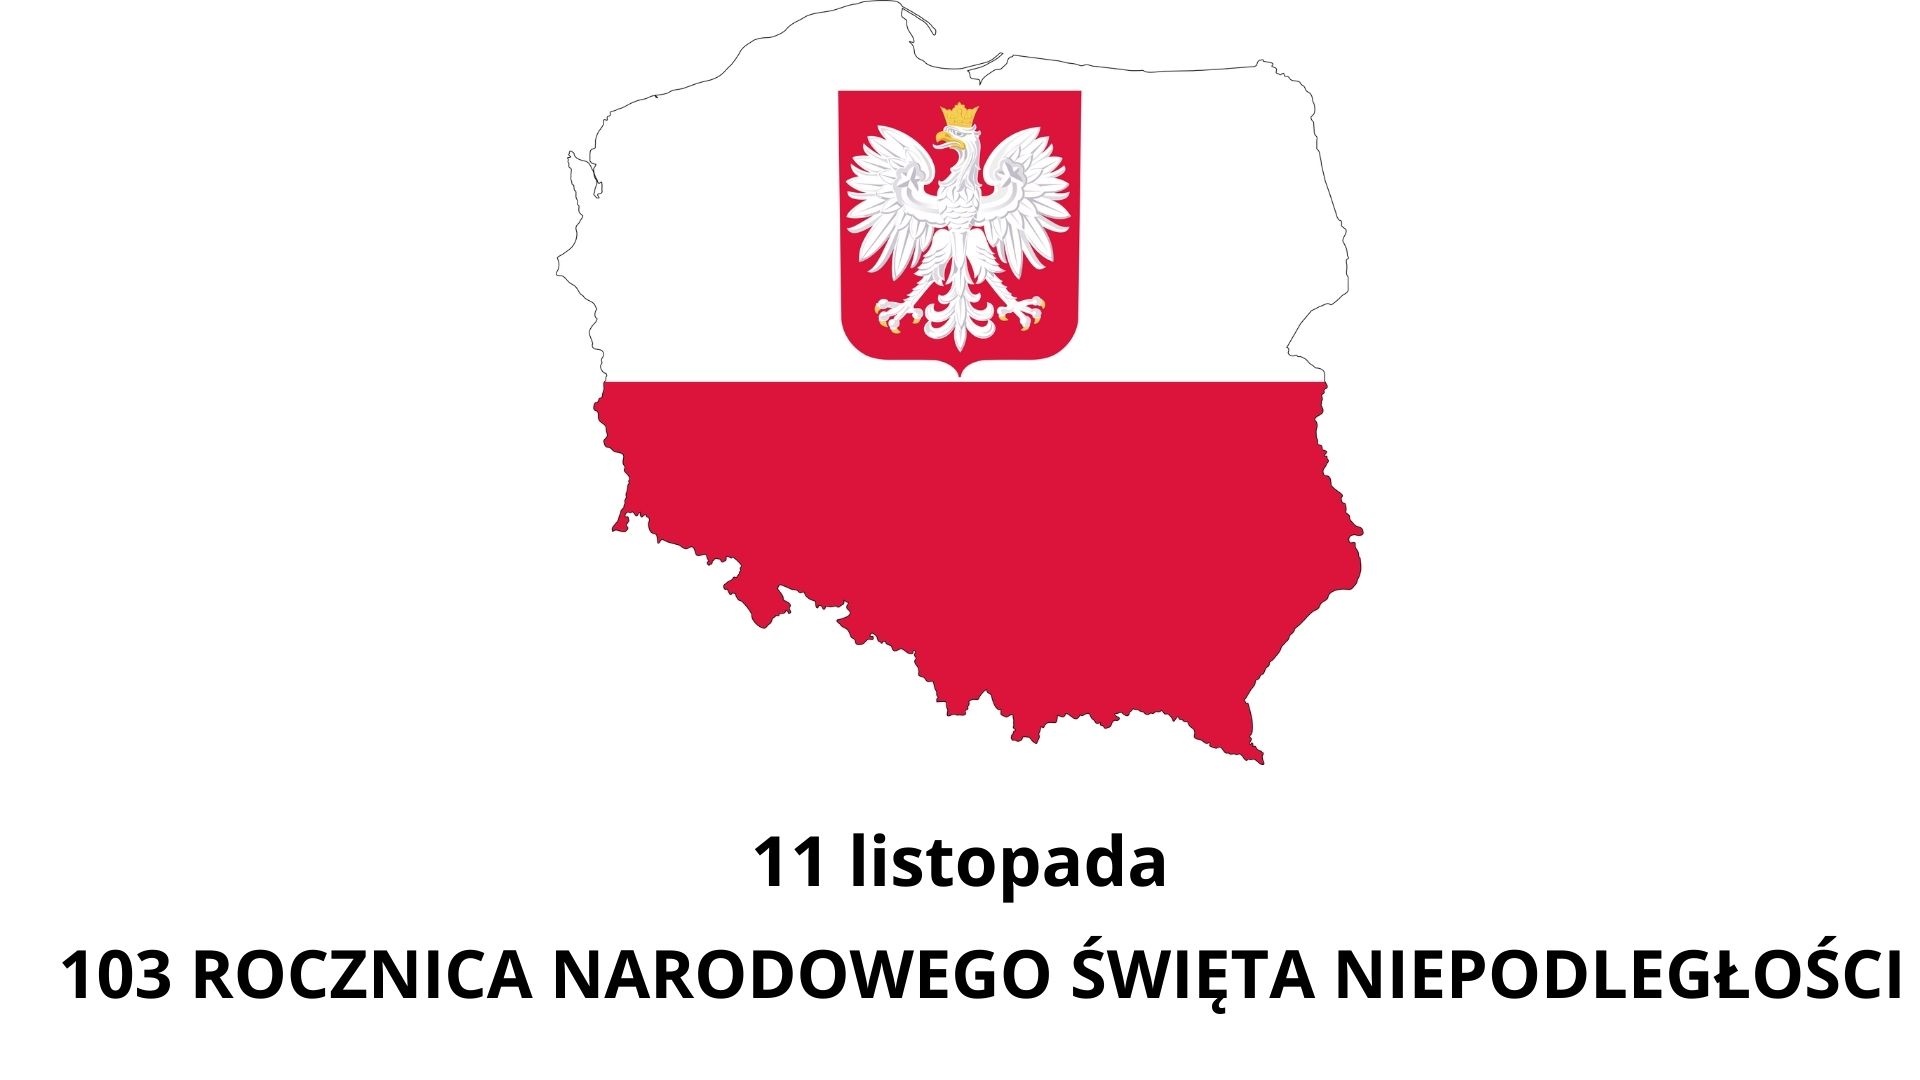 Tekst „11 listopada 103 ROCZNICA NARODOWEGO ŚWIĘTA NIEPODLEGŁOŚCI” oraz biało=-czerwony kontur mapy Polski wraz z orłem w koronie.